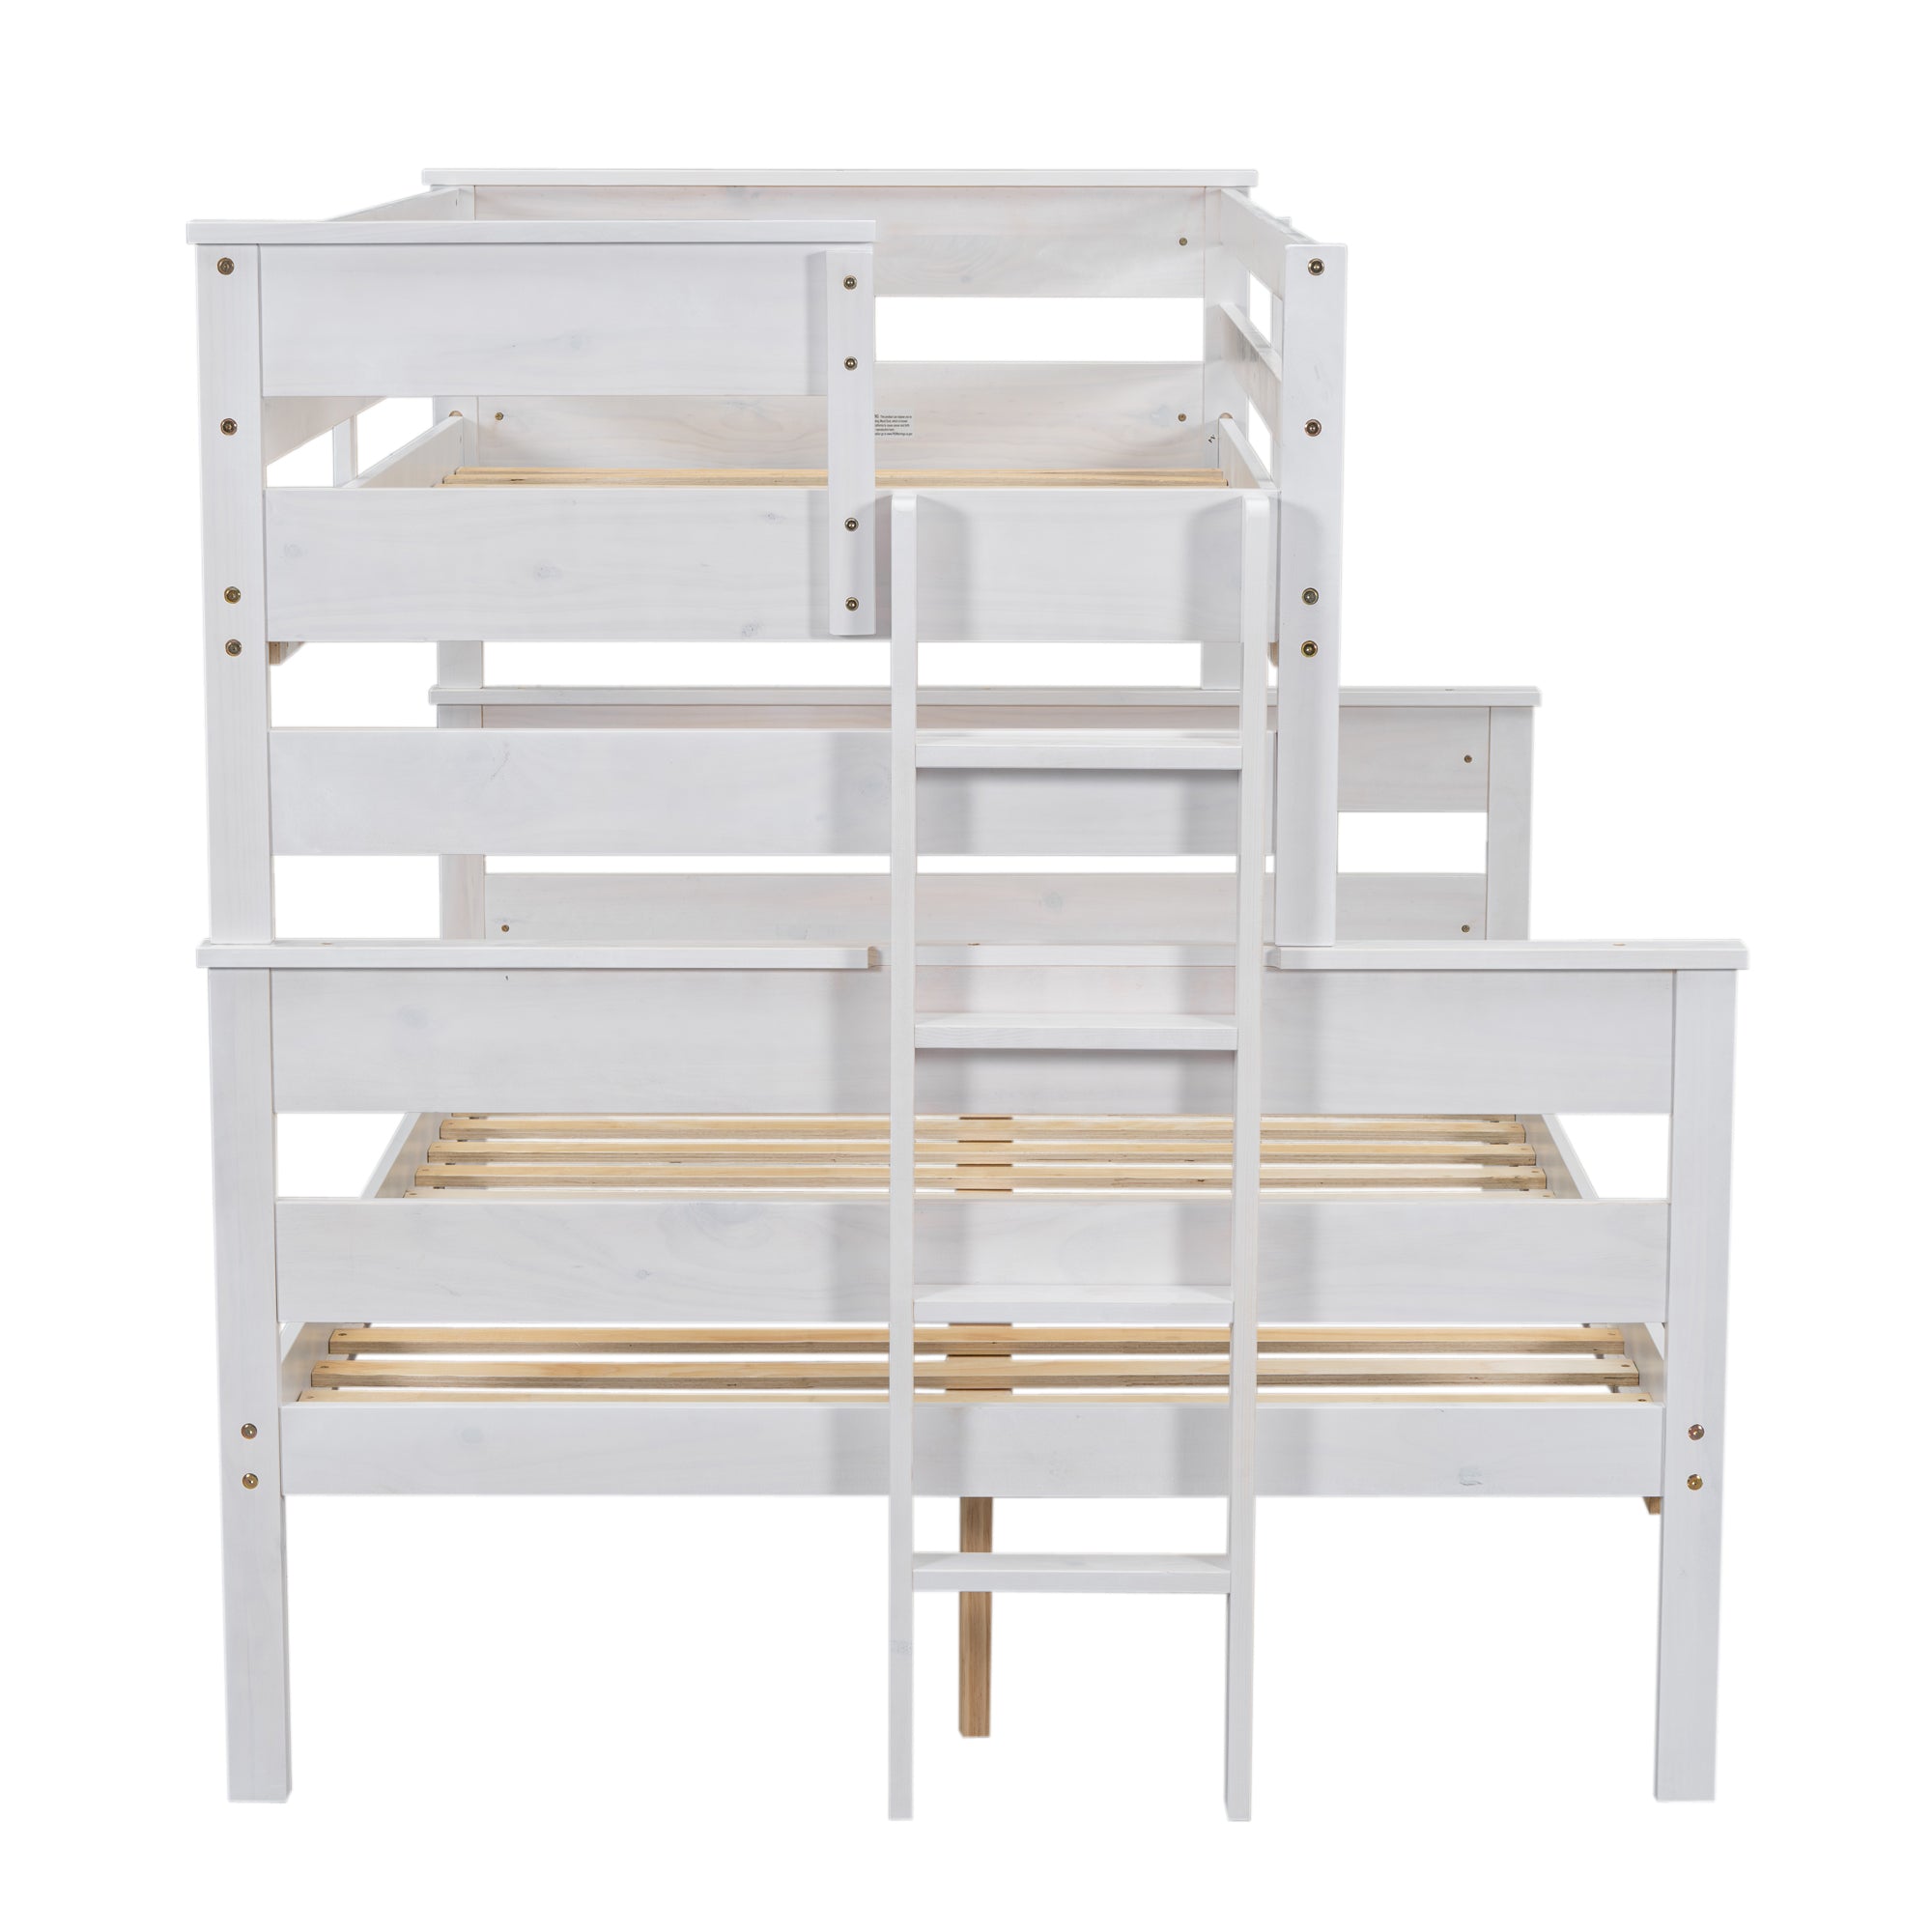 Bellemave® Wood Bunk Bed with Ladder Bellemave®